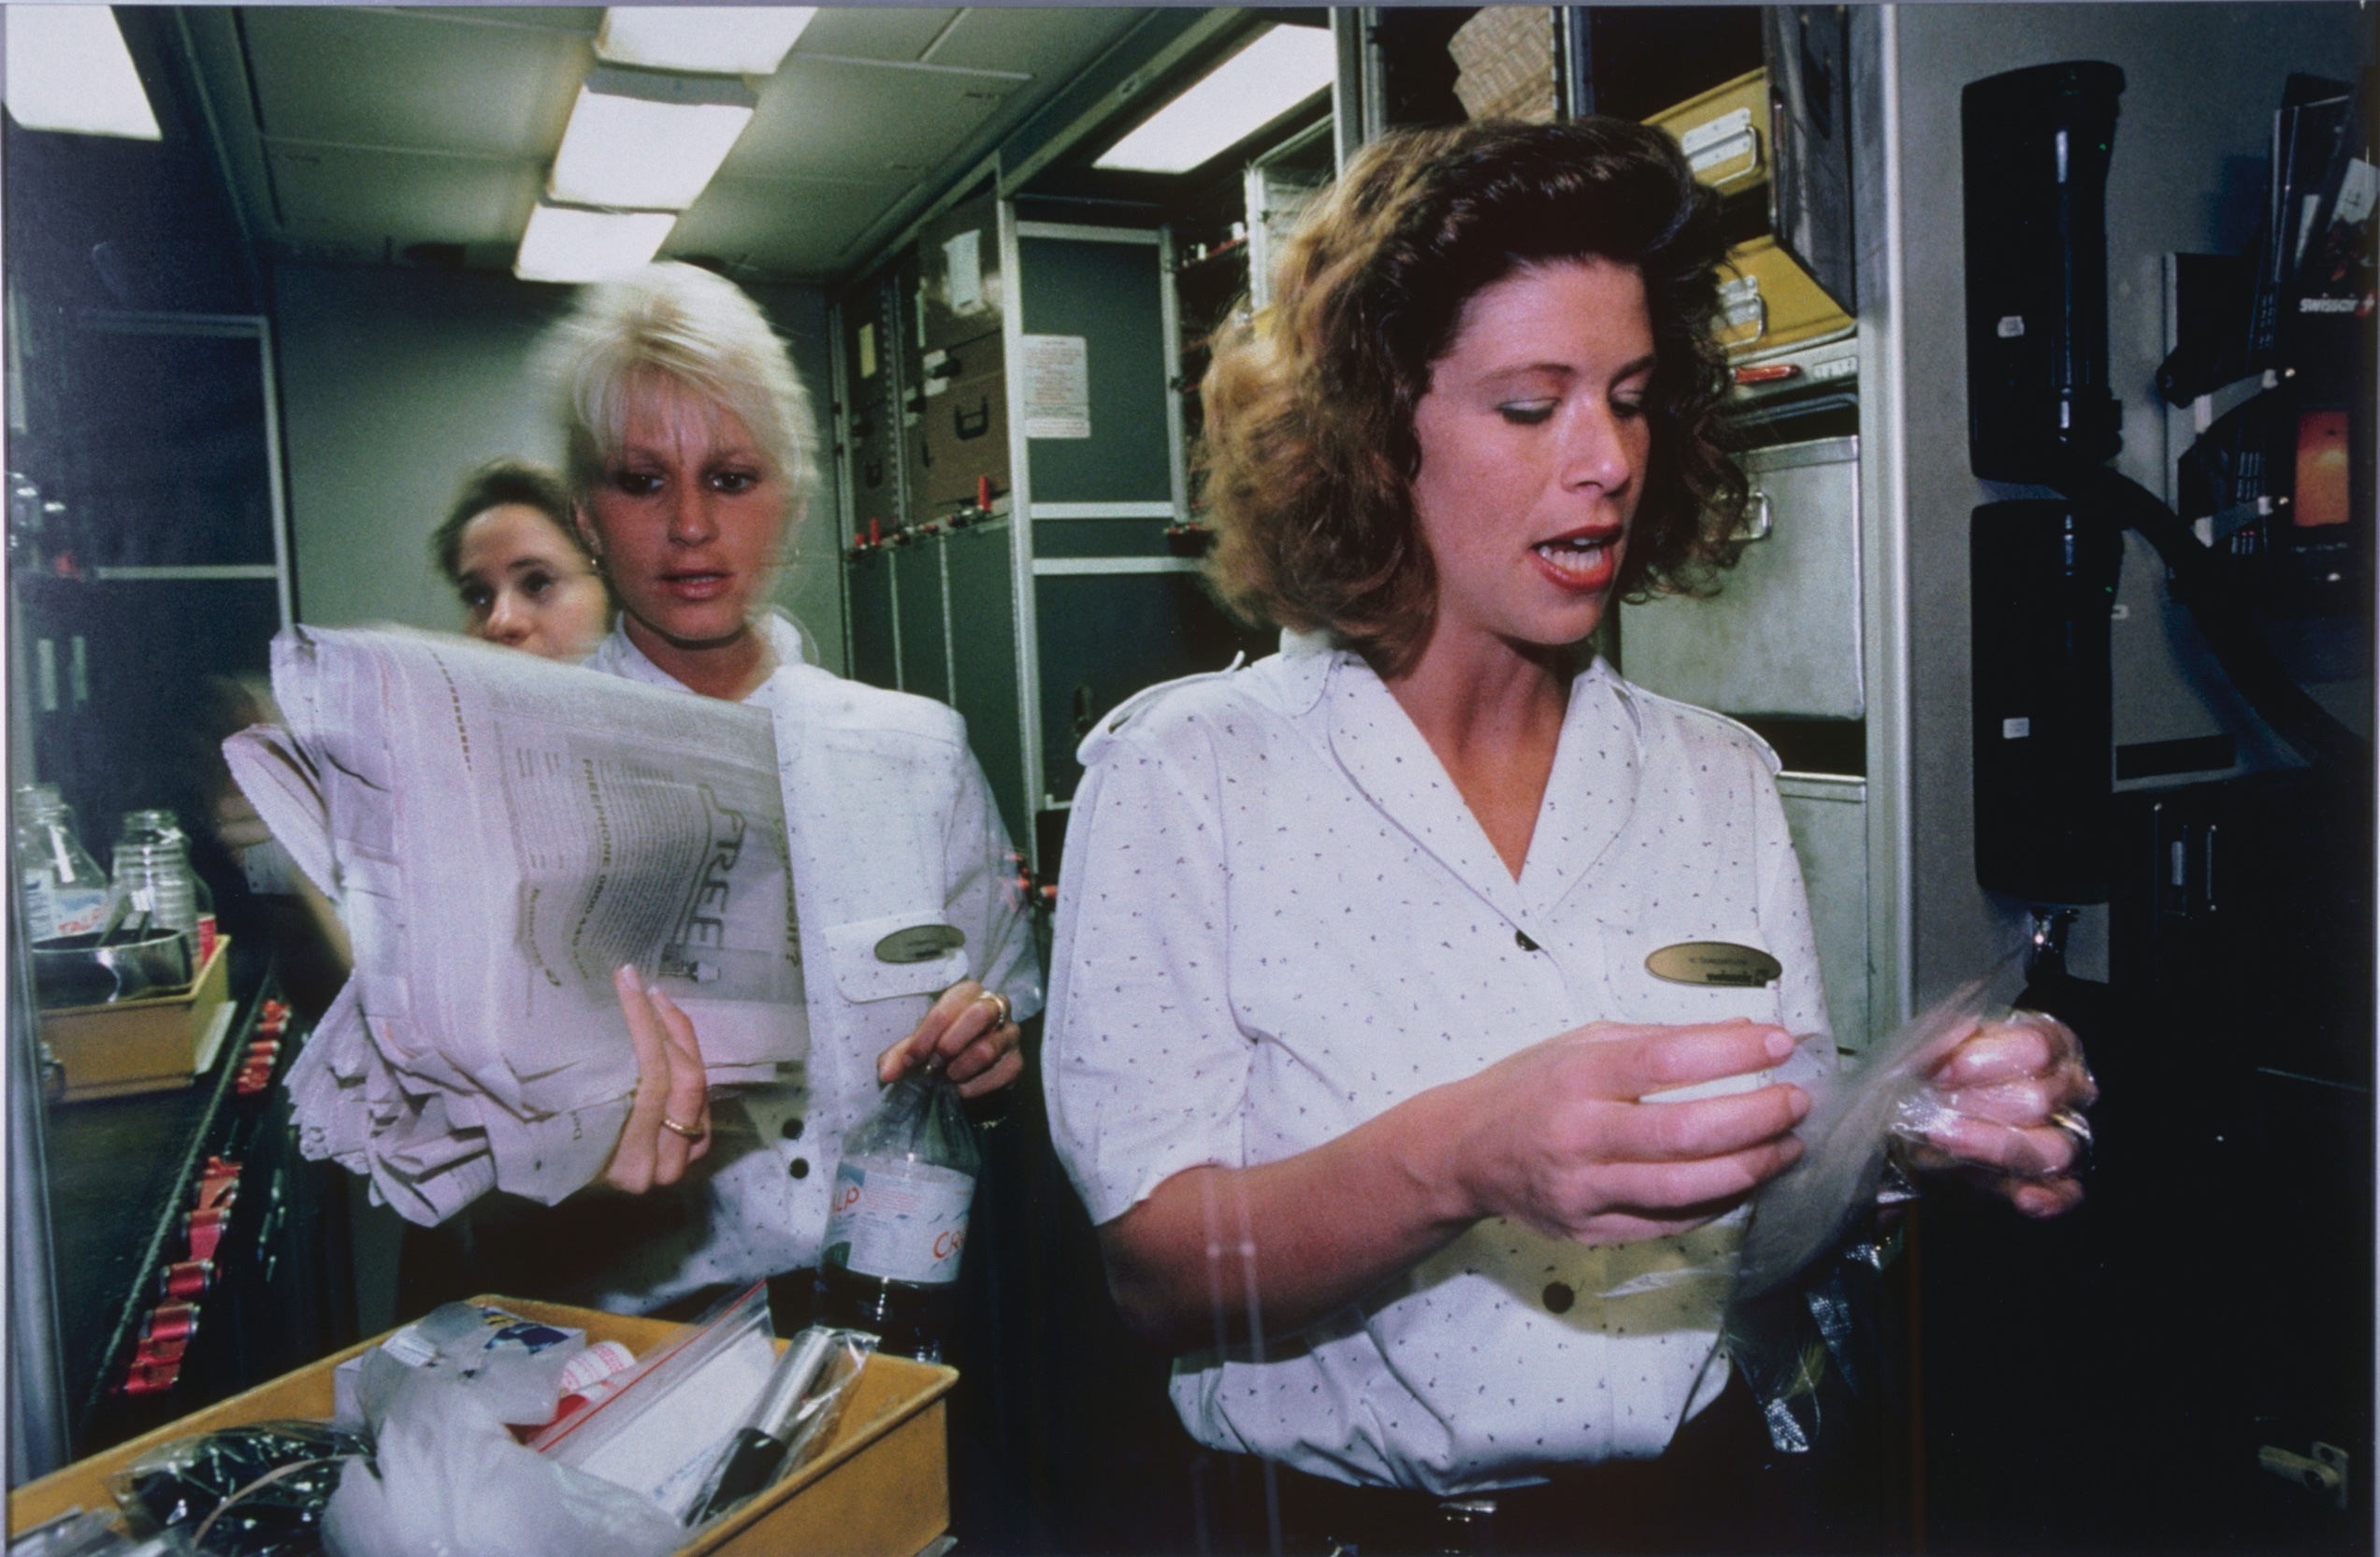 La photo montre trois femmes avec des chemisiers blancs. Une femme tient un journal et une bouteille d'eau et une autre tient quelque chose enveloppé dans du plastique. EIles portent également un badge doré.